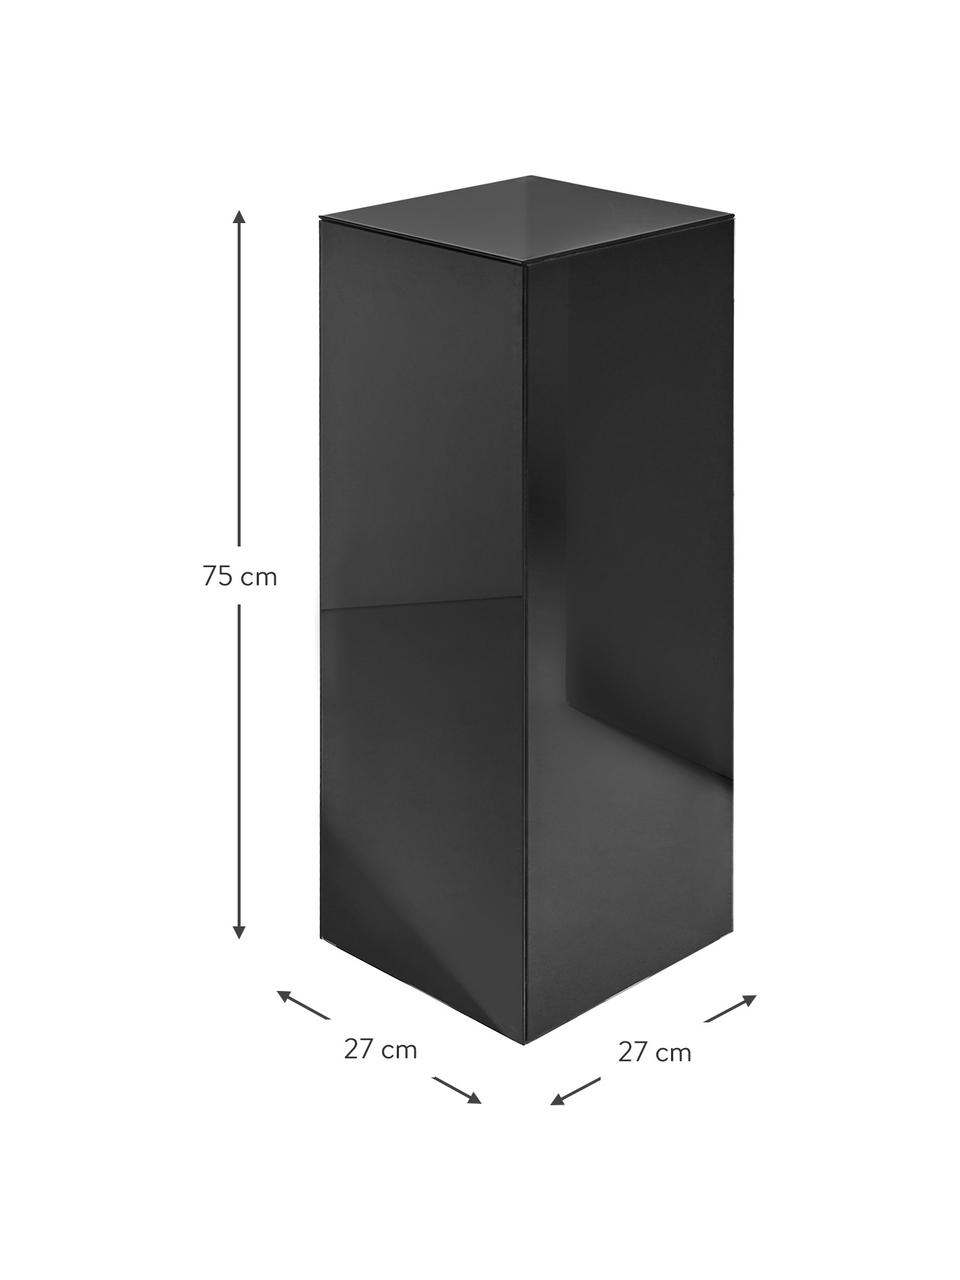 Dekorativní sloup se zrcadlovým efektem Pop, MDF deska (dřevovláknitá deska střední hustoty), barevné sklo, Černá, Š 27 cm, V 75 cm